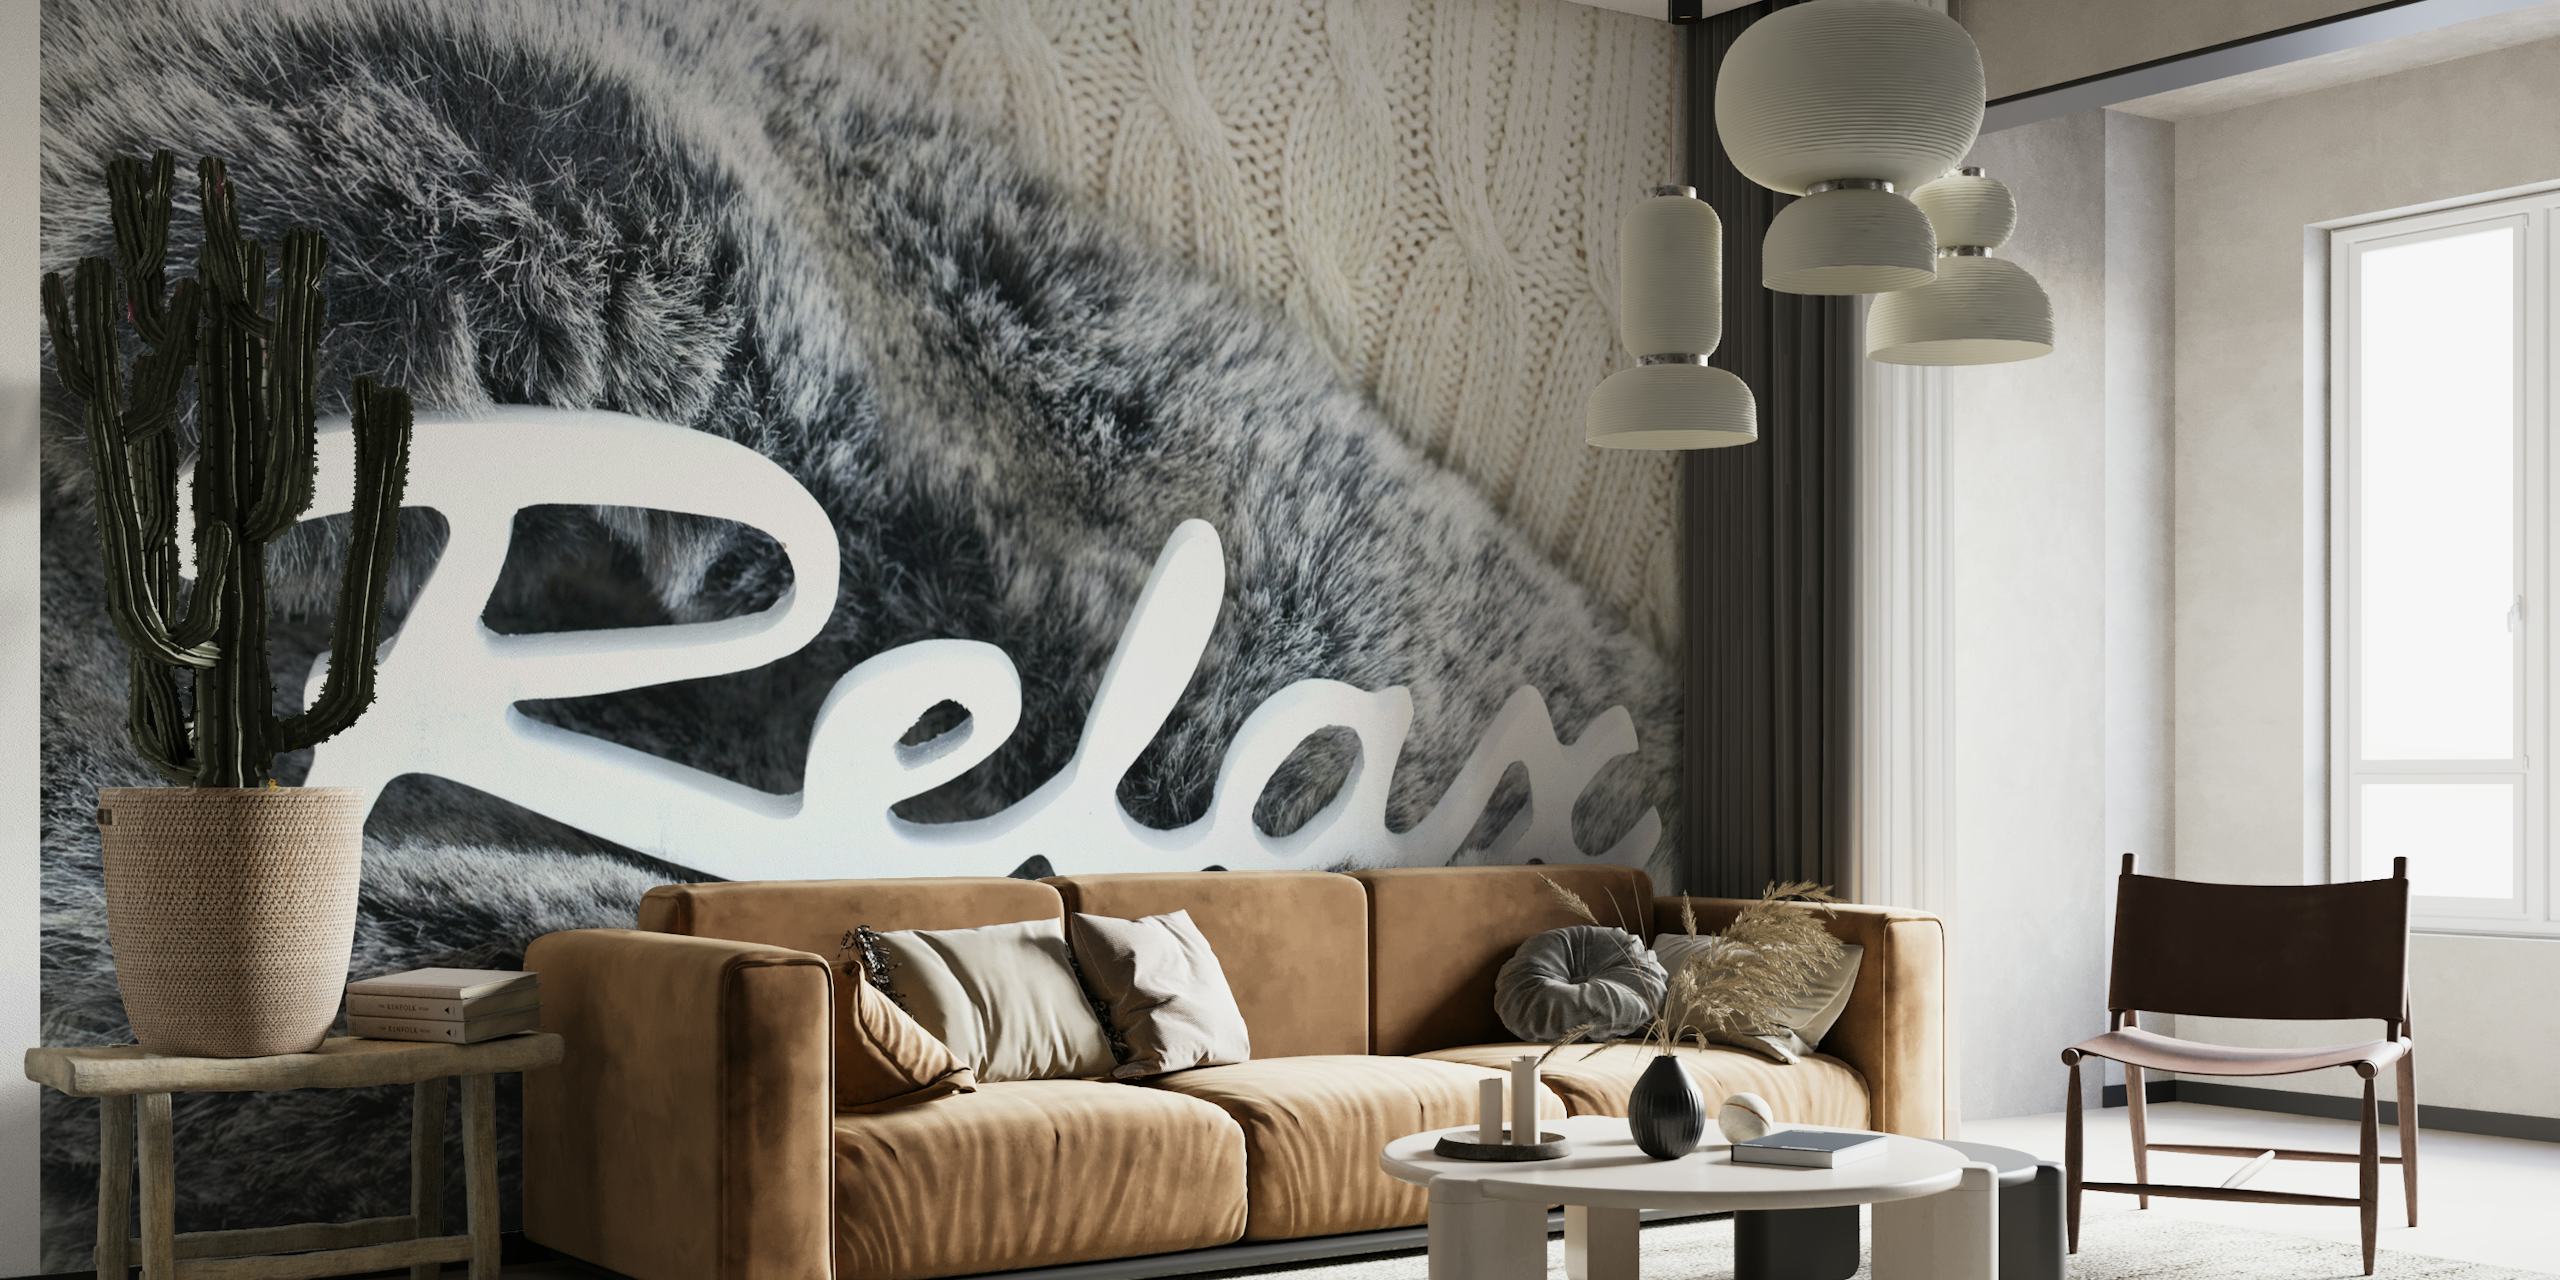 Mural de pared con textura de piel simulada y la palabra "Relax" en una escritura elegante